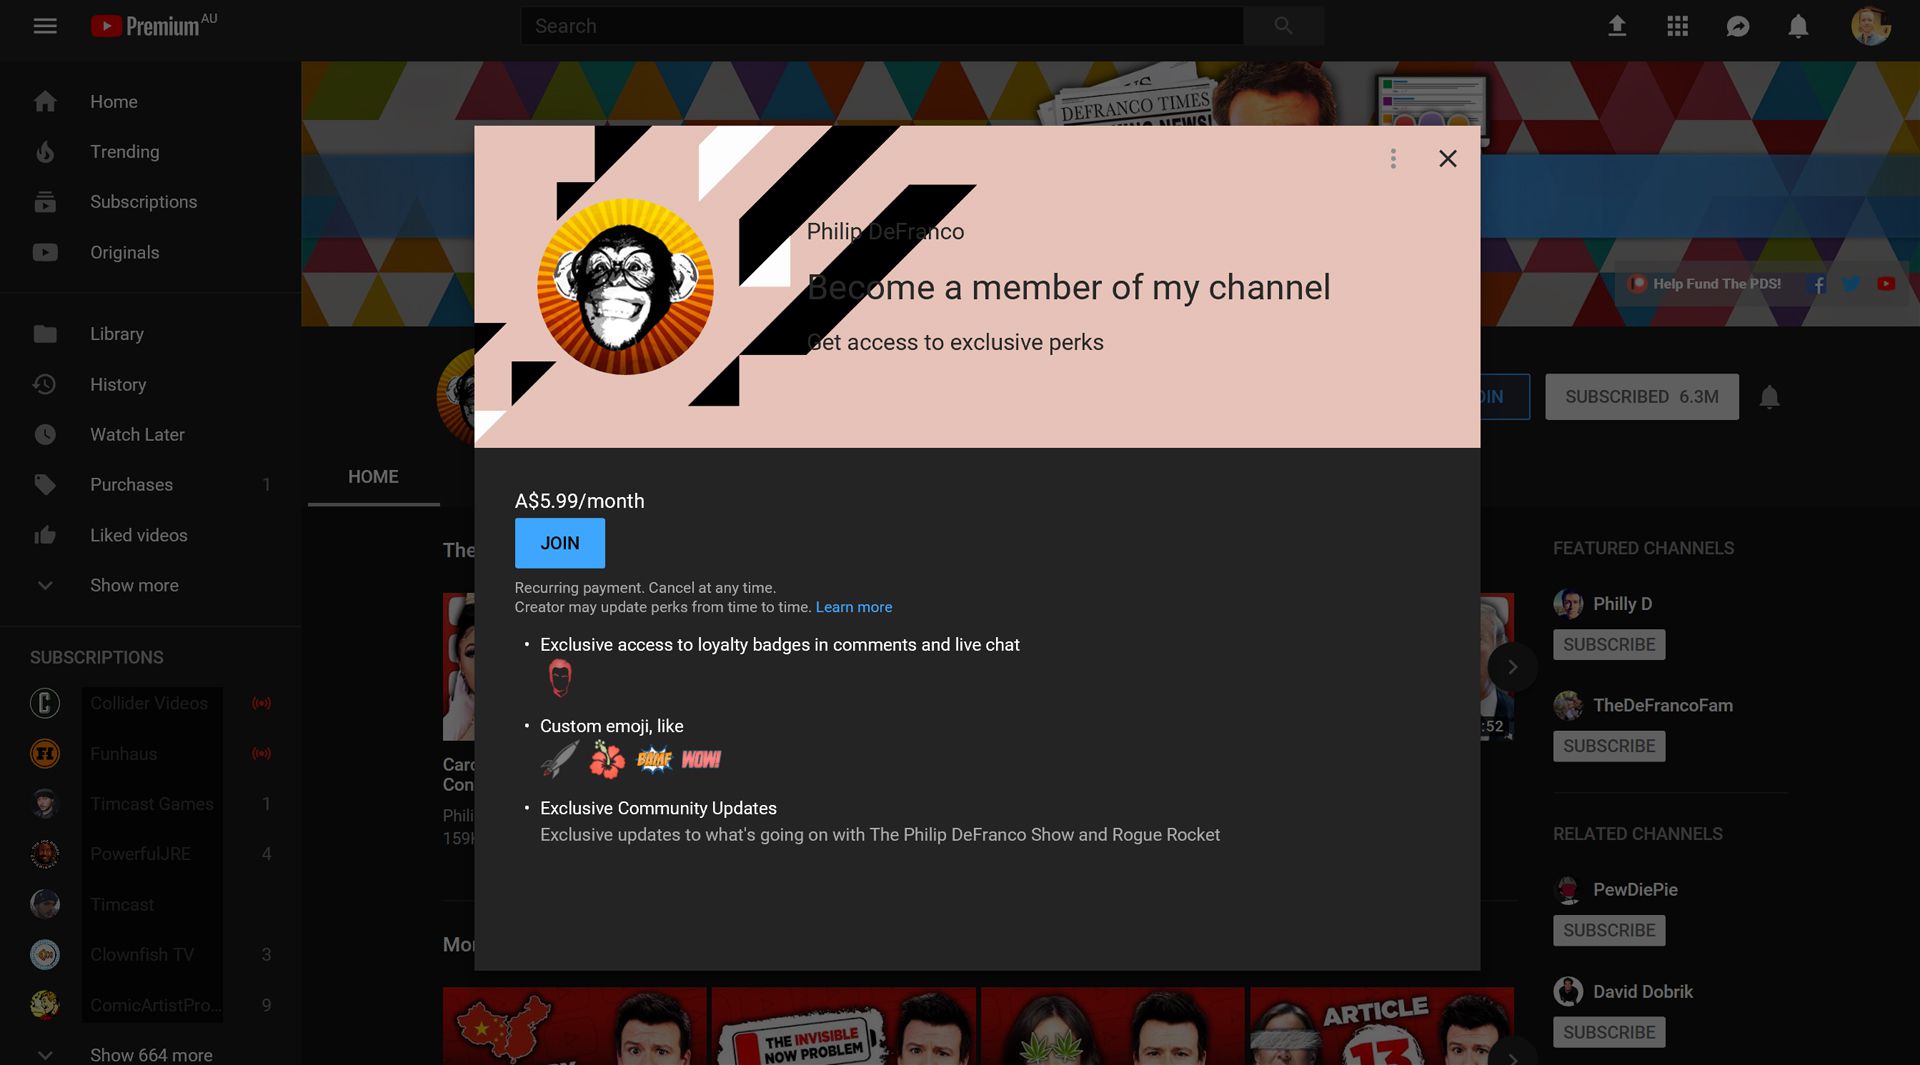 Informações sobre membros do canal do YouTube, como emblemas e emoji.